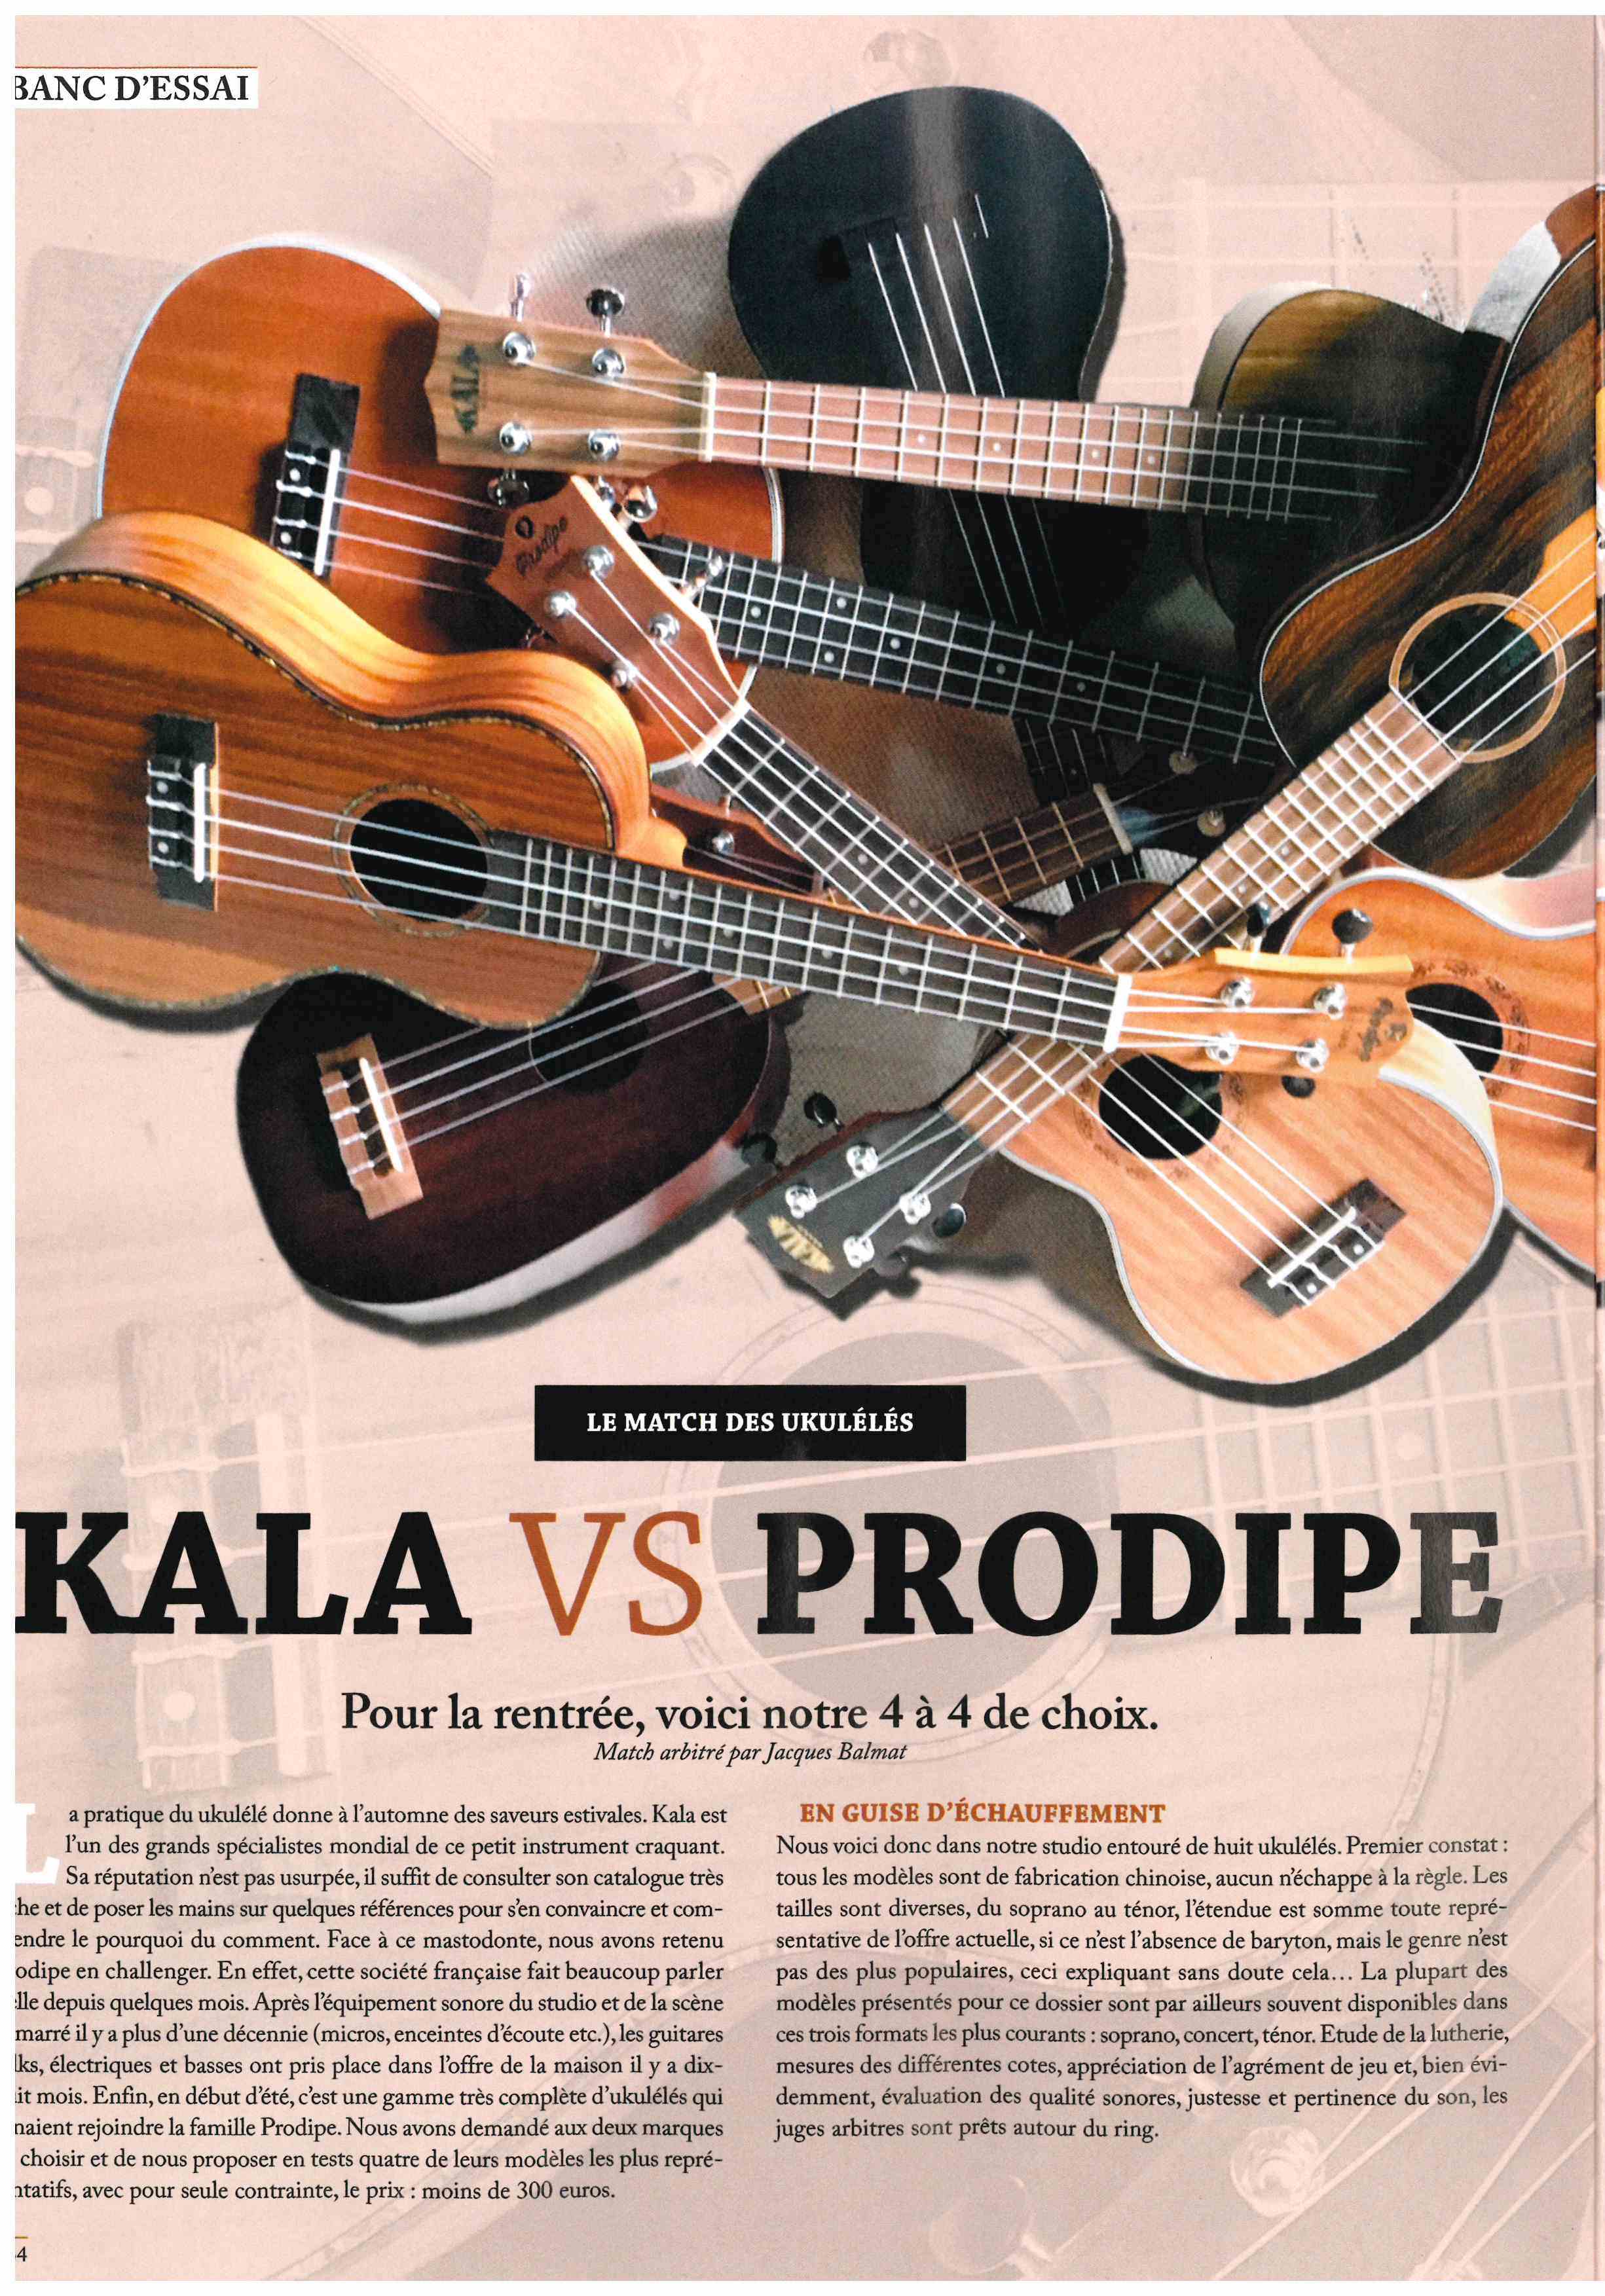 Banc d'essai Kala vs Prodipe 1